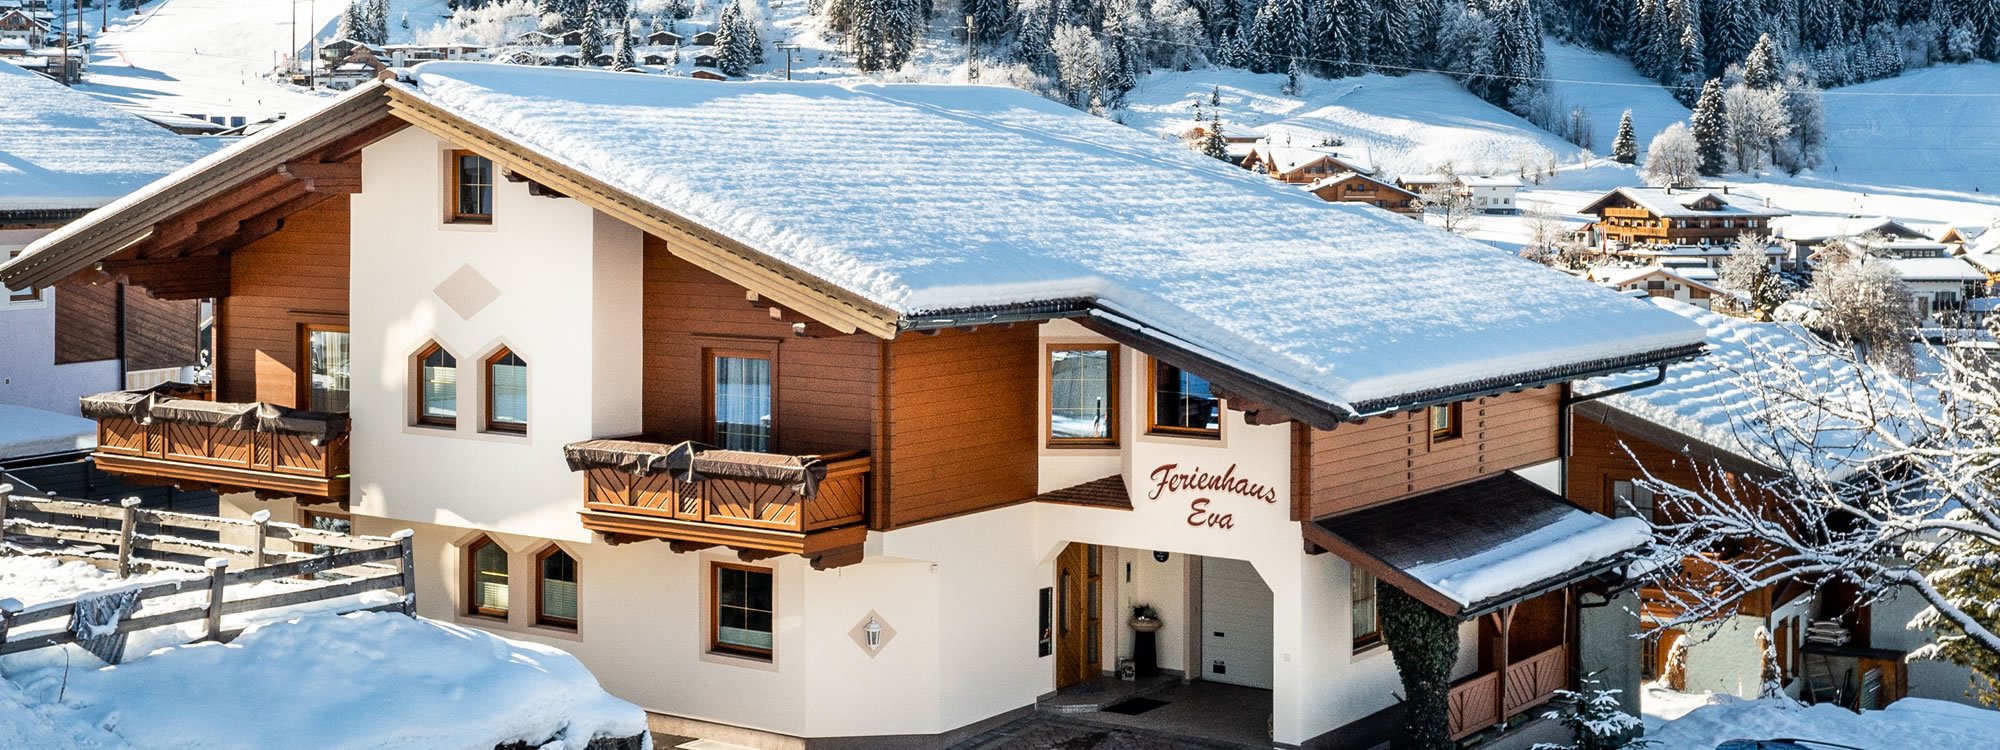 Winterurlaub im Ferienhaus Eva in Flachau, Ski amadé